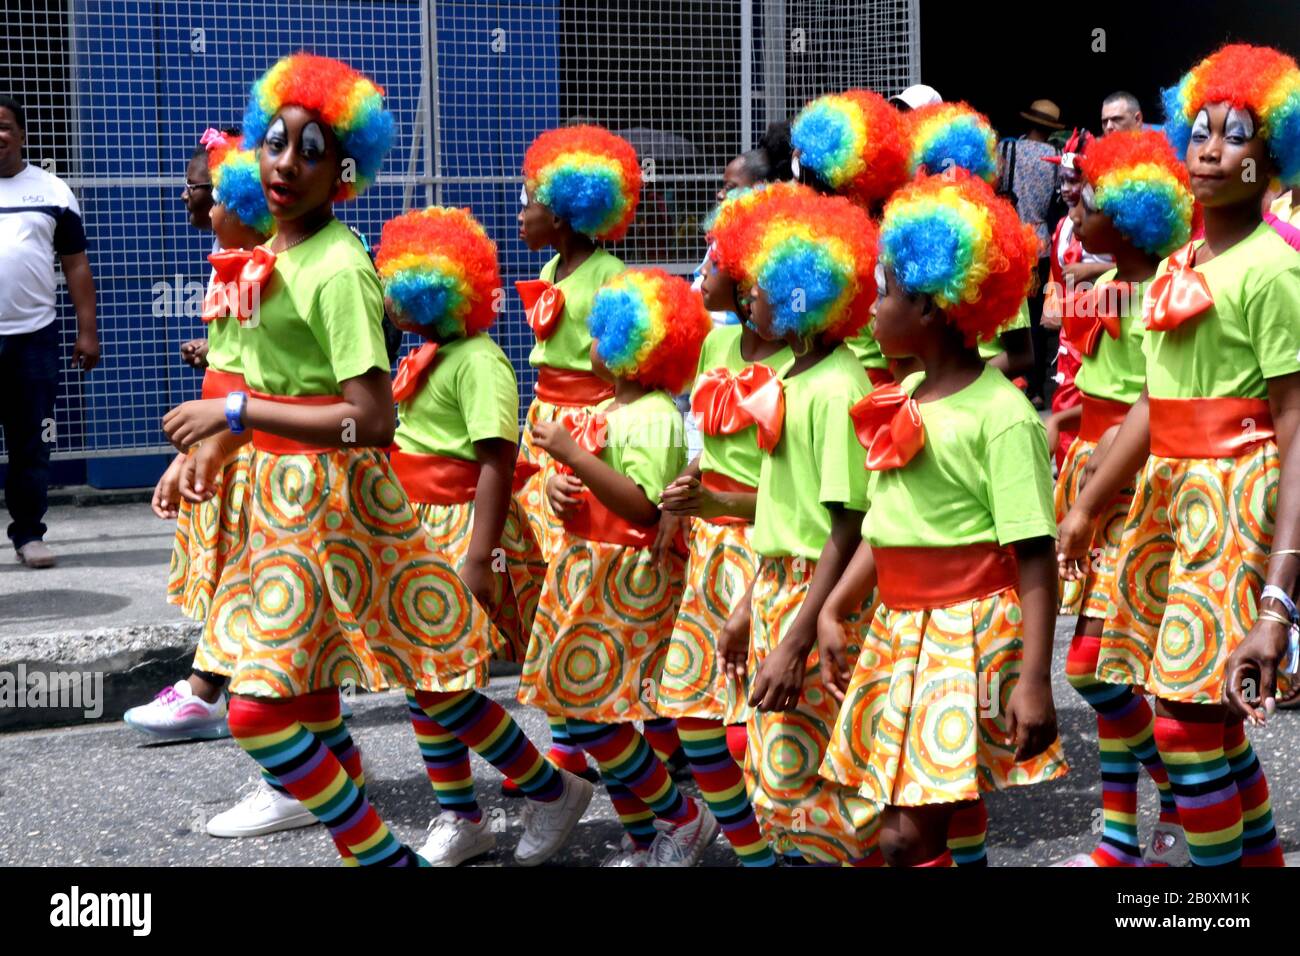 Hafen Von Spanien, Trinidad, TT. Februar 2020. Traditionelle Karnevalsfiguren kamen am Freitag, 21. Februar 2020 auf die Straßen von Port of Spain, um einen Mittagsumzug in einer von vielen Veranstaltungen zu feiern, die zum Karneval führten, der am 24. Und 25. Stattfinden wird. Februar 2020. Kredit: G. Ronald Lopez/ZUMA Wire/Alamy Live News Stockfoto